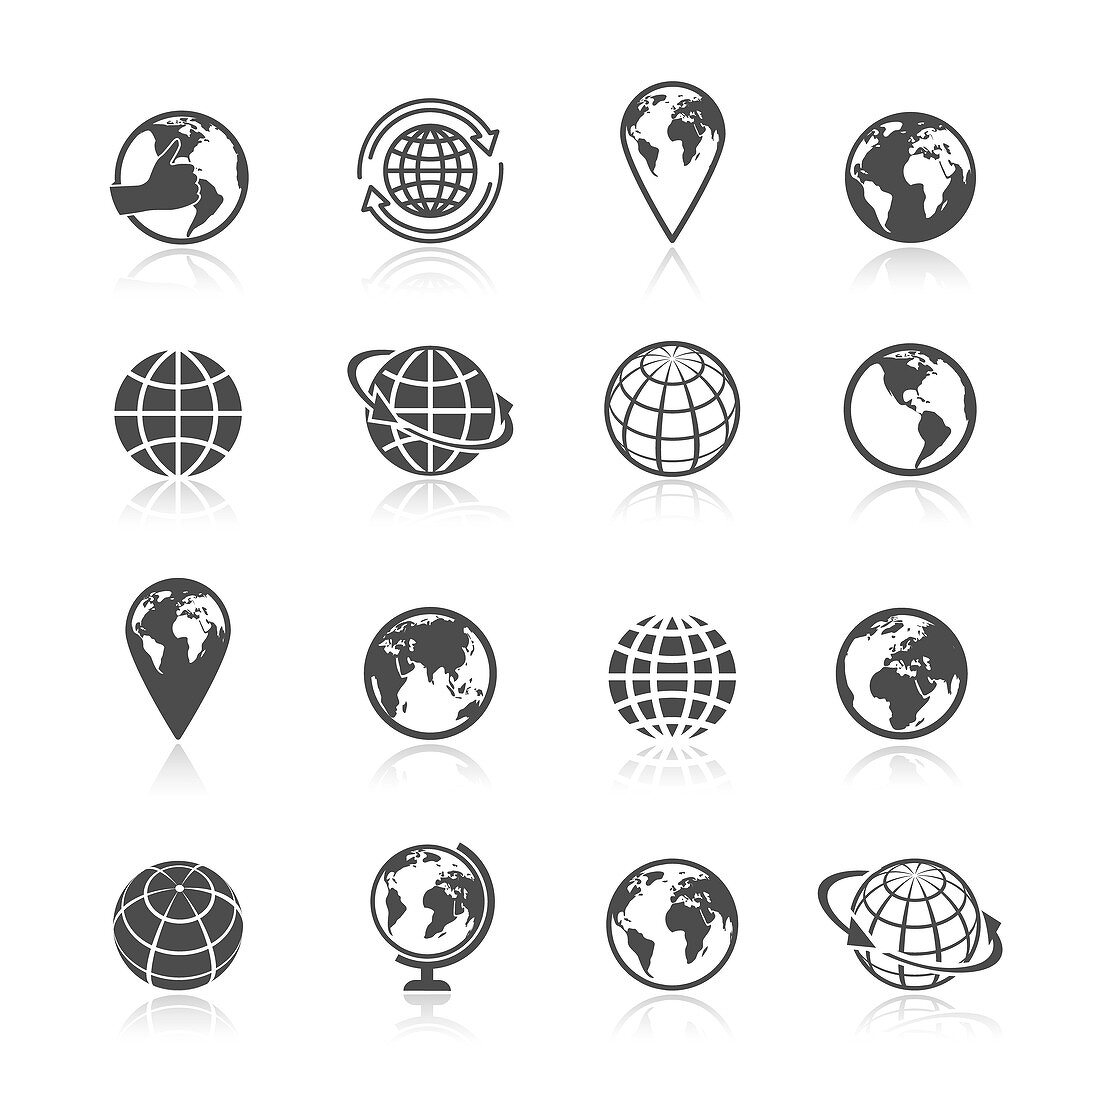 Globe icons, illustration